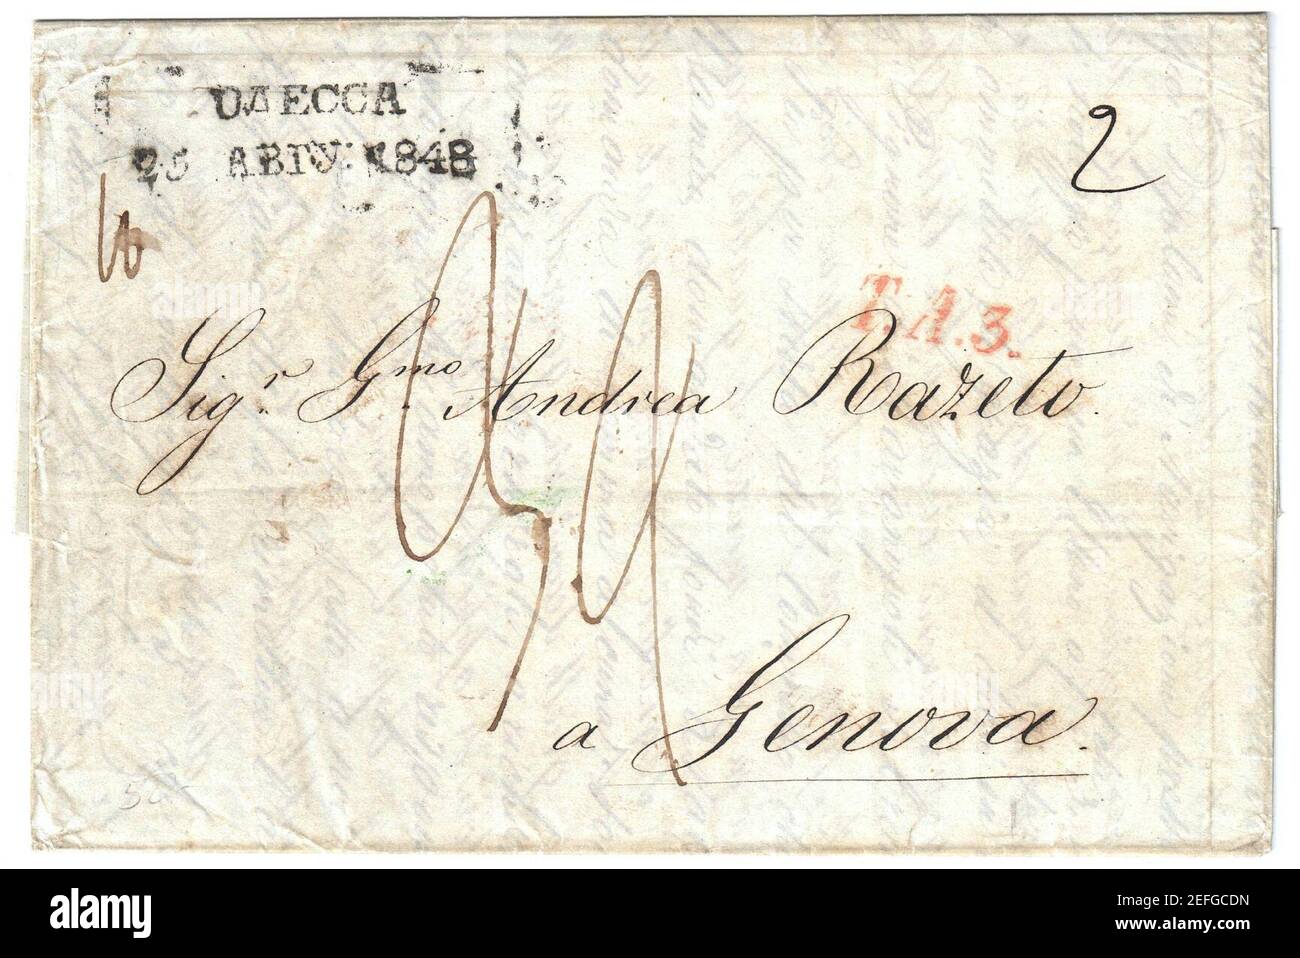 Odessa 1848 Dob 57.1.01 1.03 per Genova. Foto Stock